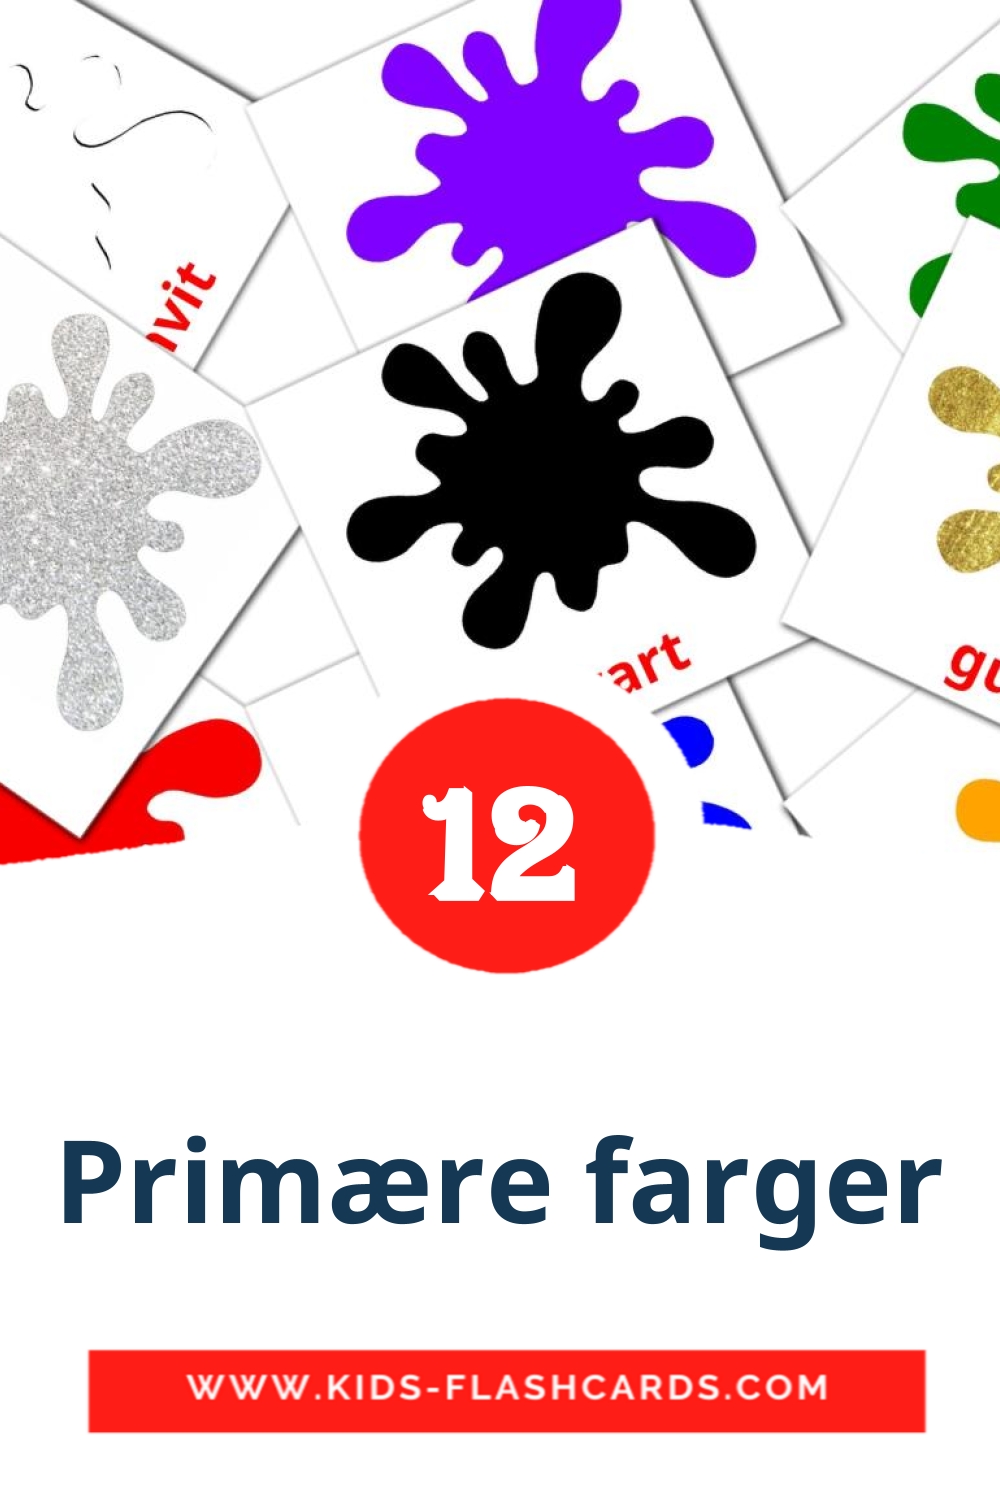 12 tarjetas didacticas de Primære farger para el jardín de infancia en noruego